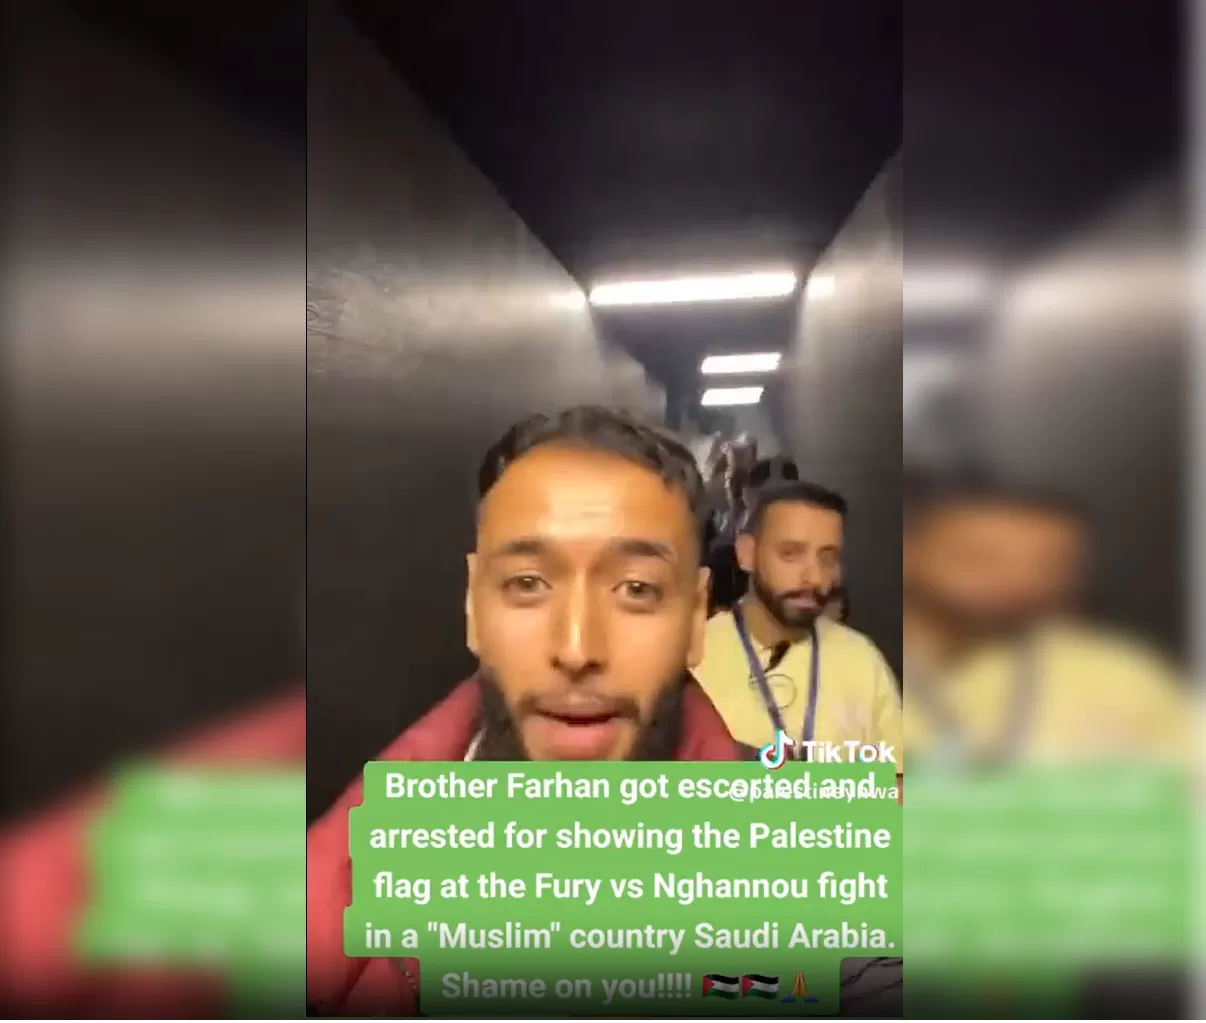 احتجاز بريطاني لرفعه علم فلسطين في السعودية